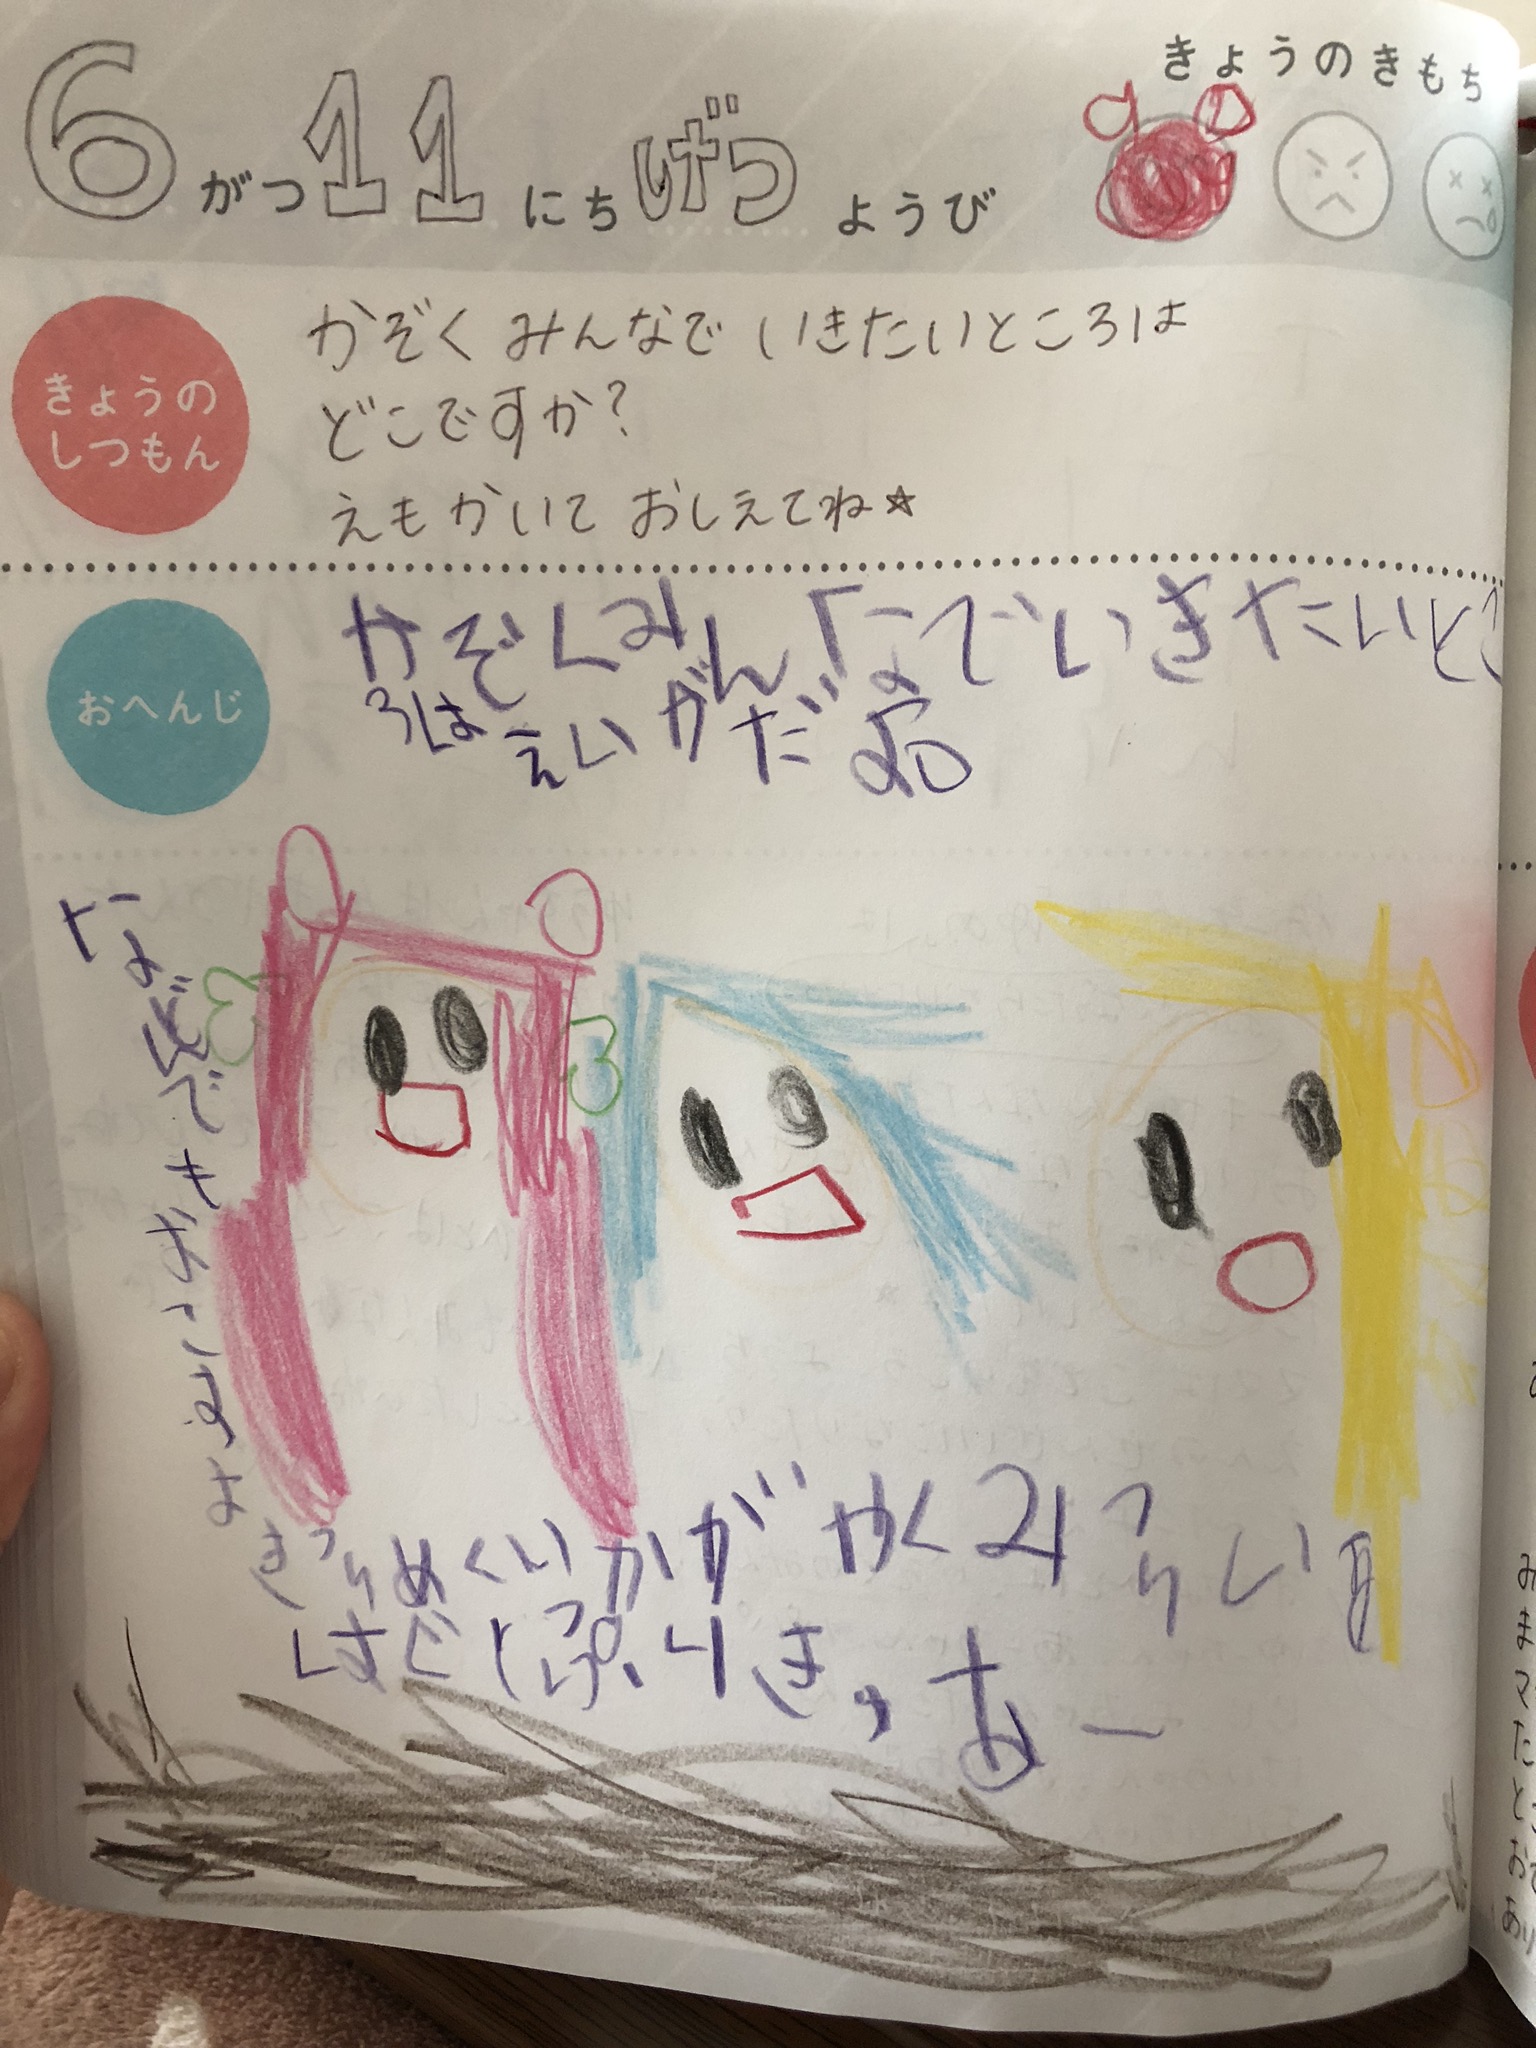 親子のための交換ノート Oyako Note を5歳娘とパパで交換したら ぎゅってweb